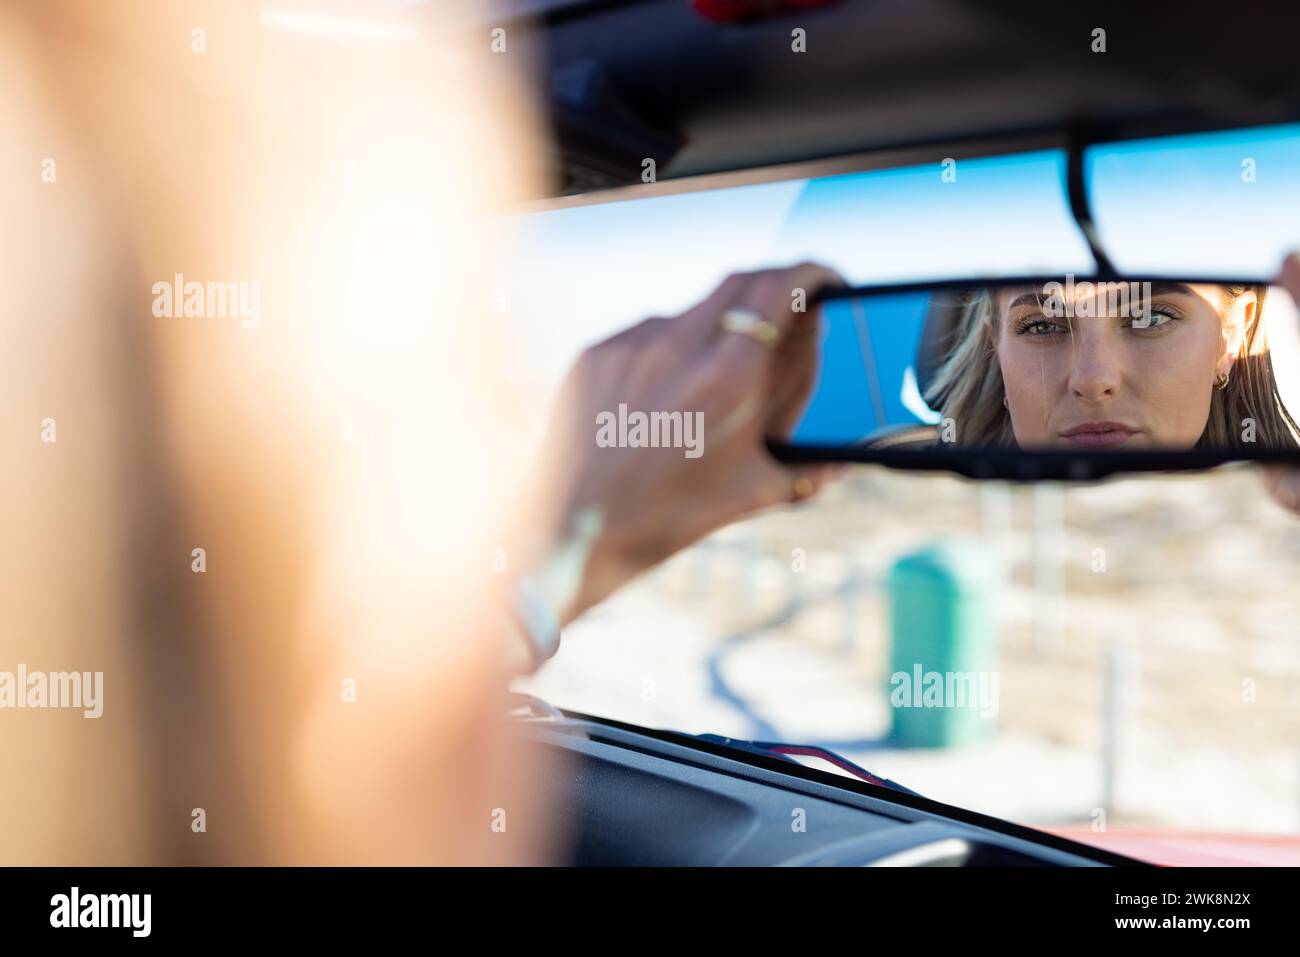 Junge kaukasische Frau stellt den Rückspiegel in einem Auto auf einer Autofahrt ein Stockfoto